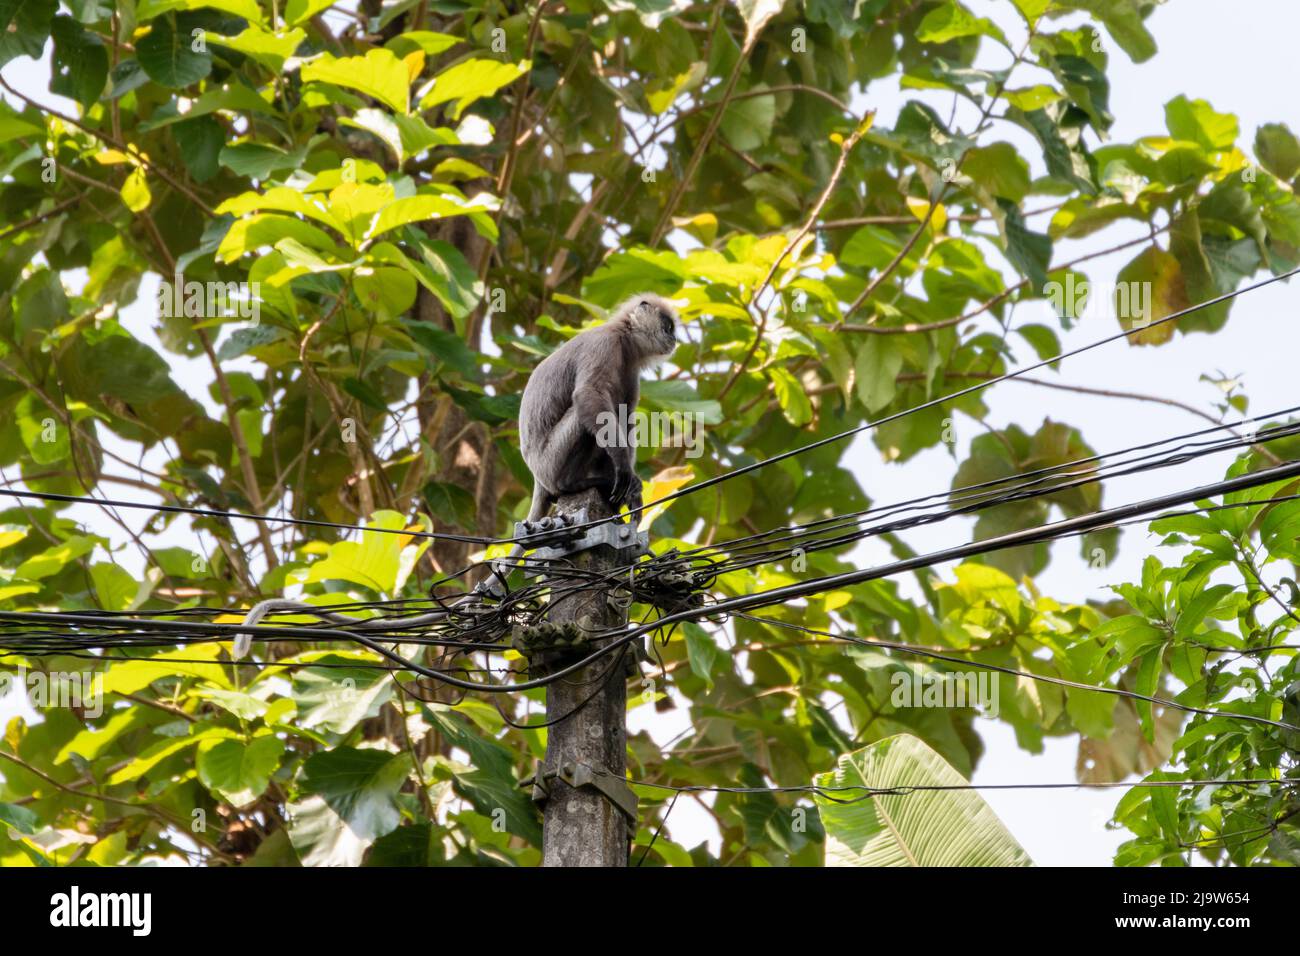 Monkey si trova sulla parte superiore di un pilastro elettrico con fili, foto per esterni. Sri Lanka. Langur grigio, chiamato anche langur Hanuman o scimmia Hanuman Foto Stock